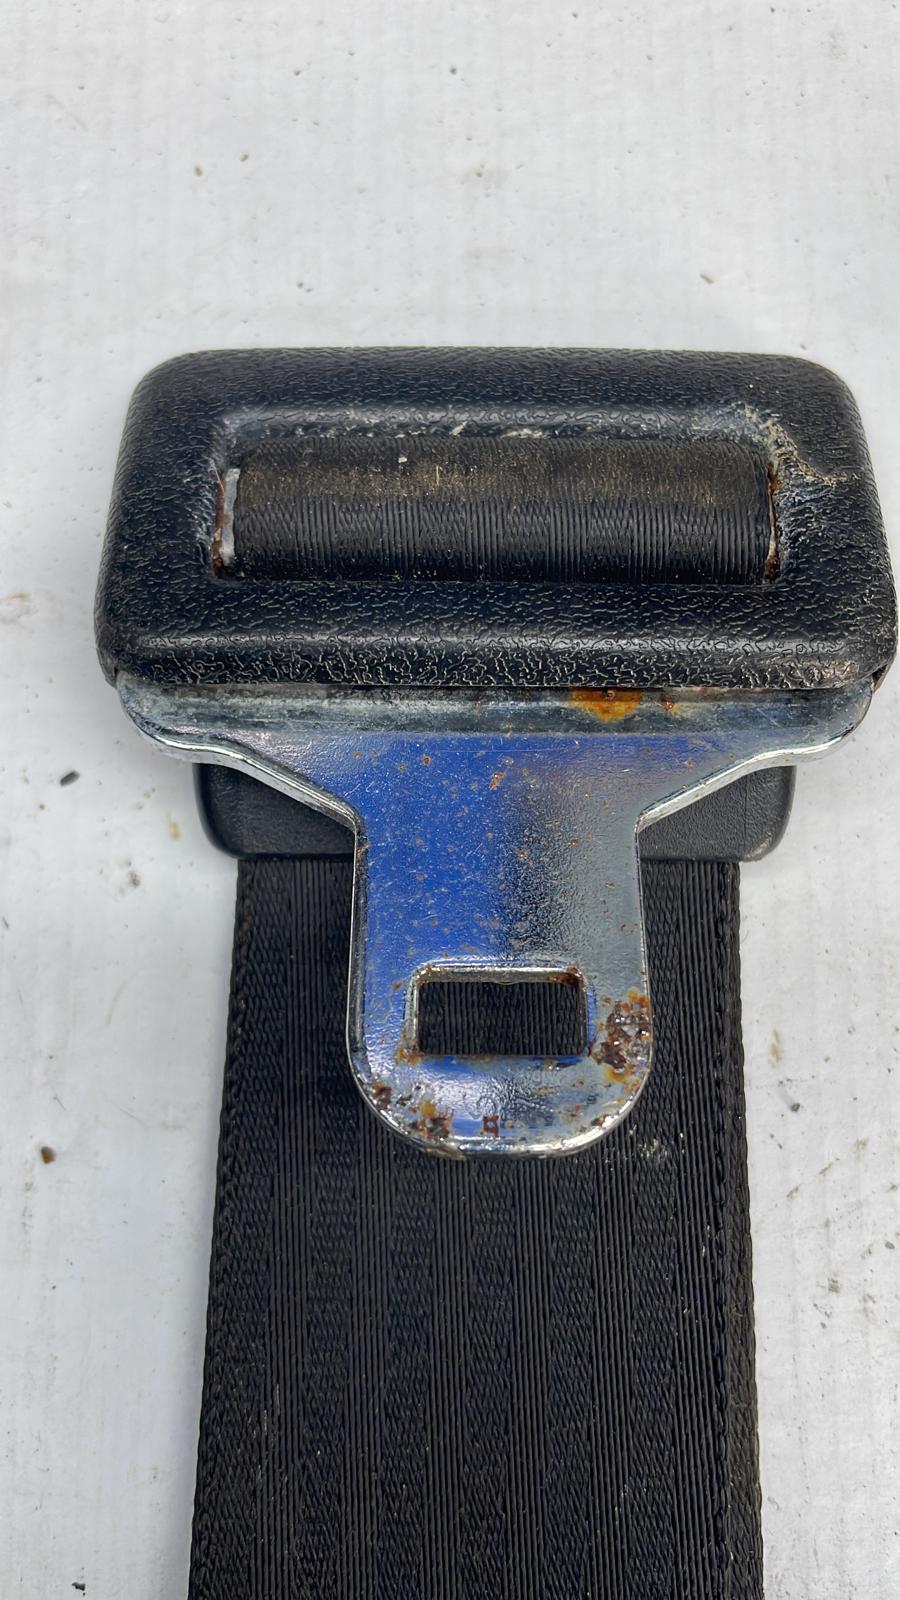 Cintura di sicurezza posteriore statica a 2 punti Porsche 924/944 usata 001 477857795 usata